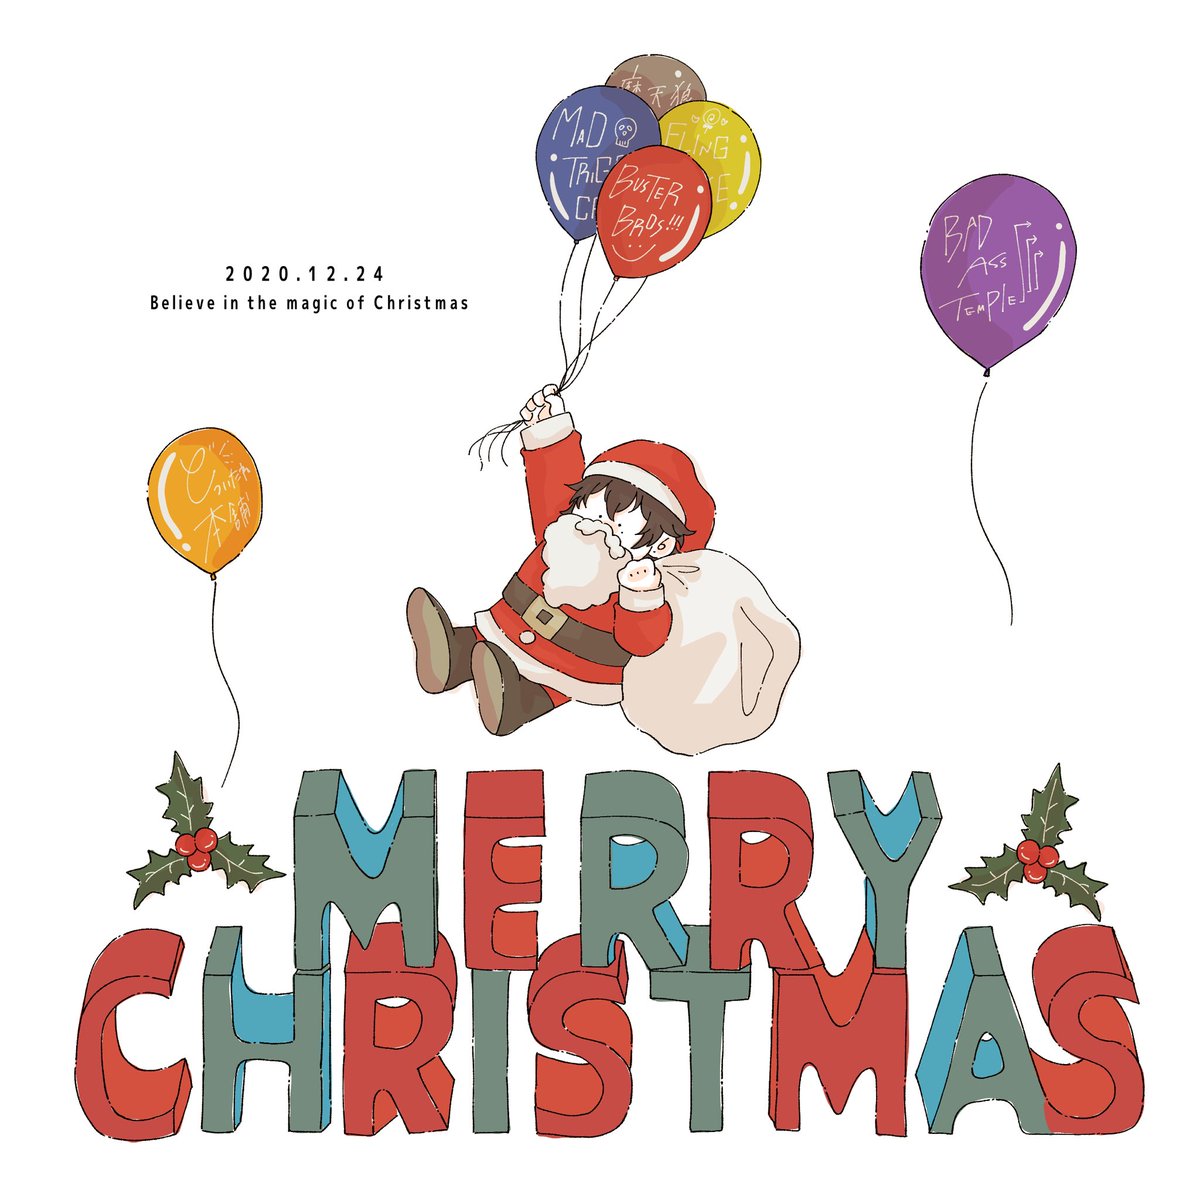 「クリスマスの魔法を信じよう!
きっと一郎サンタがやって来るよ??? 」|まるのイラスト